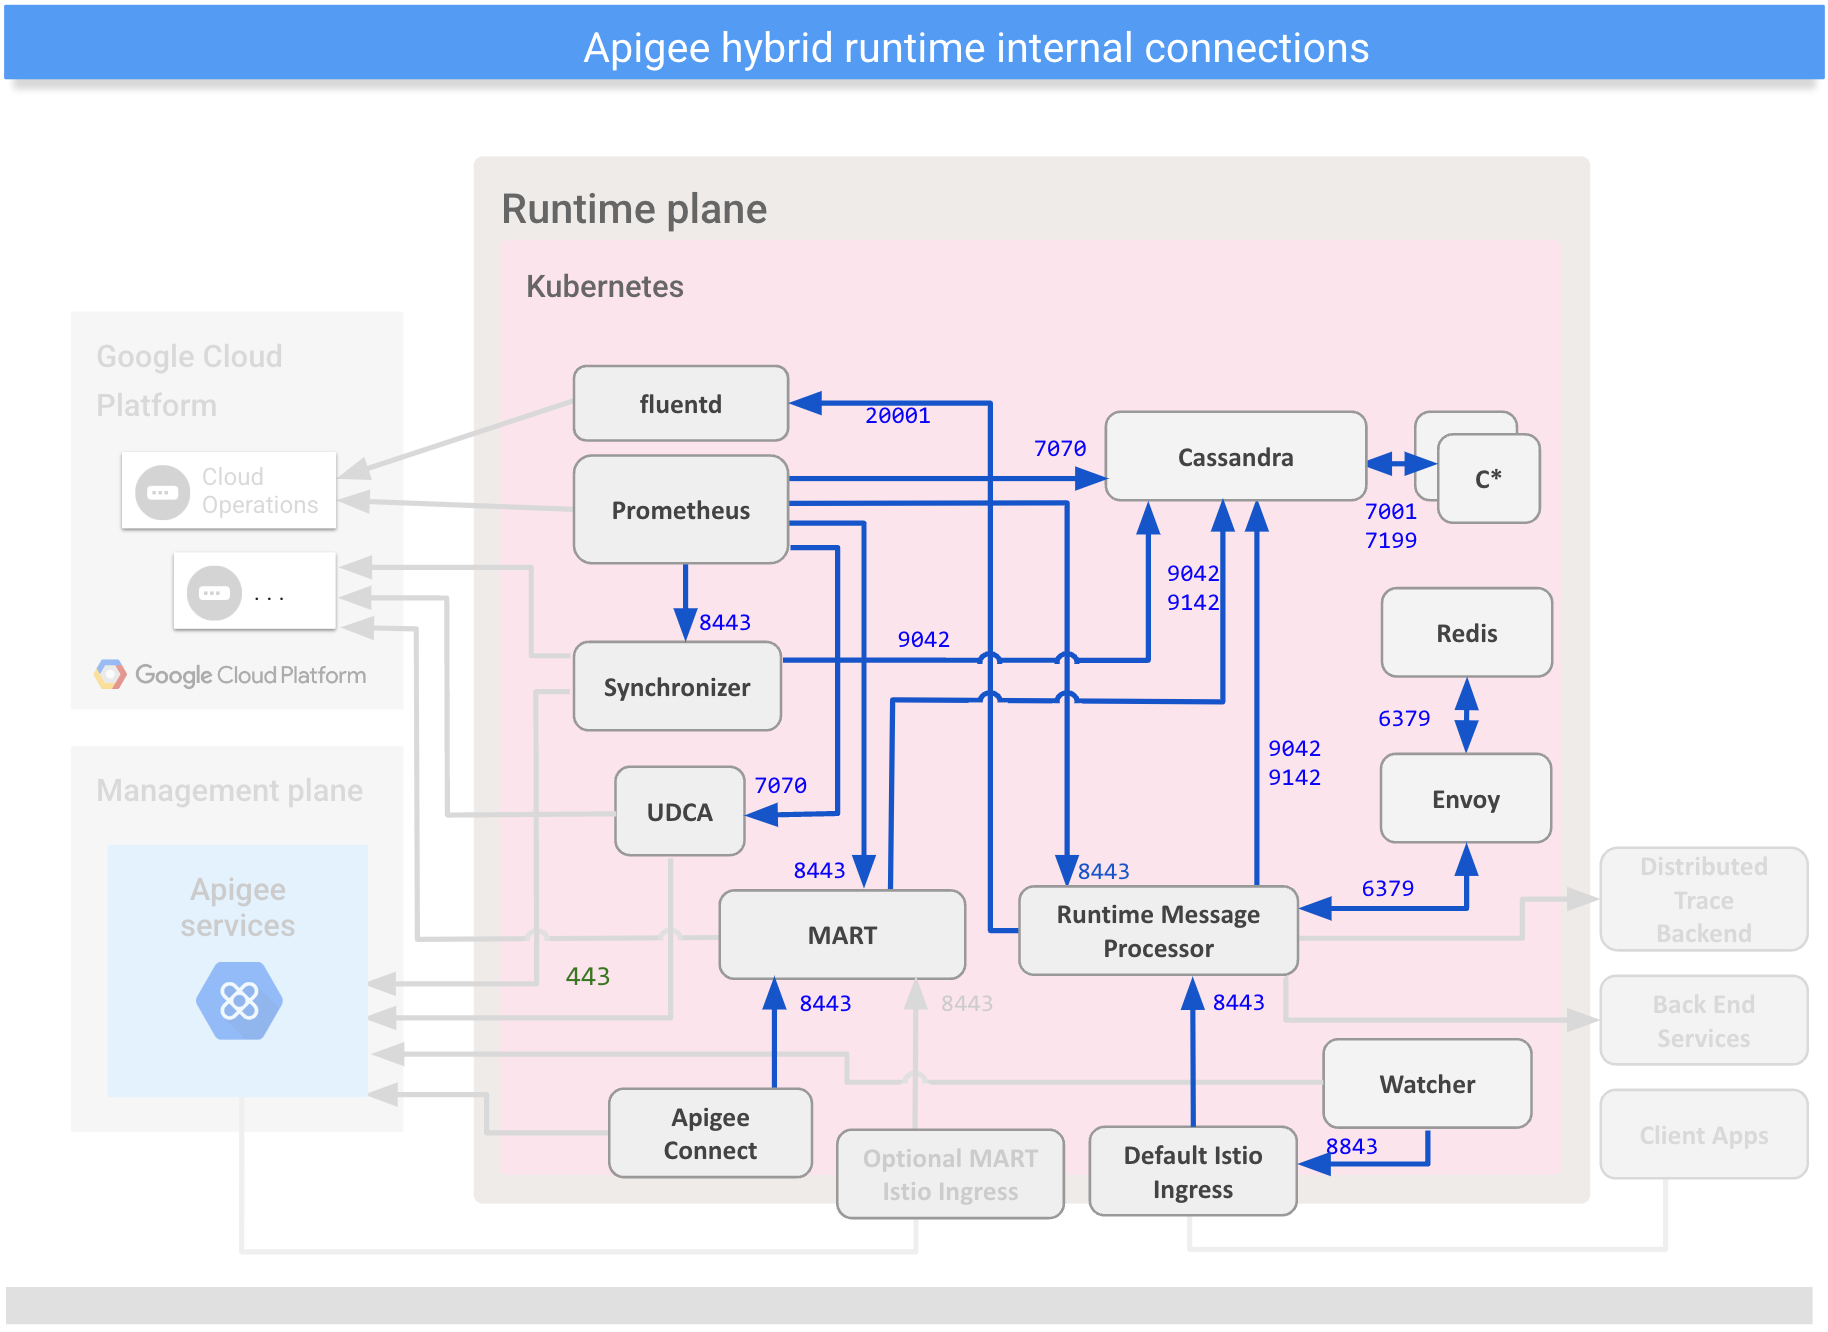 Mostra as conexões entre os componentes internos no plano do ambiente de execução híbrido.